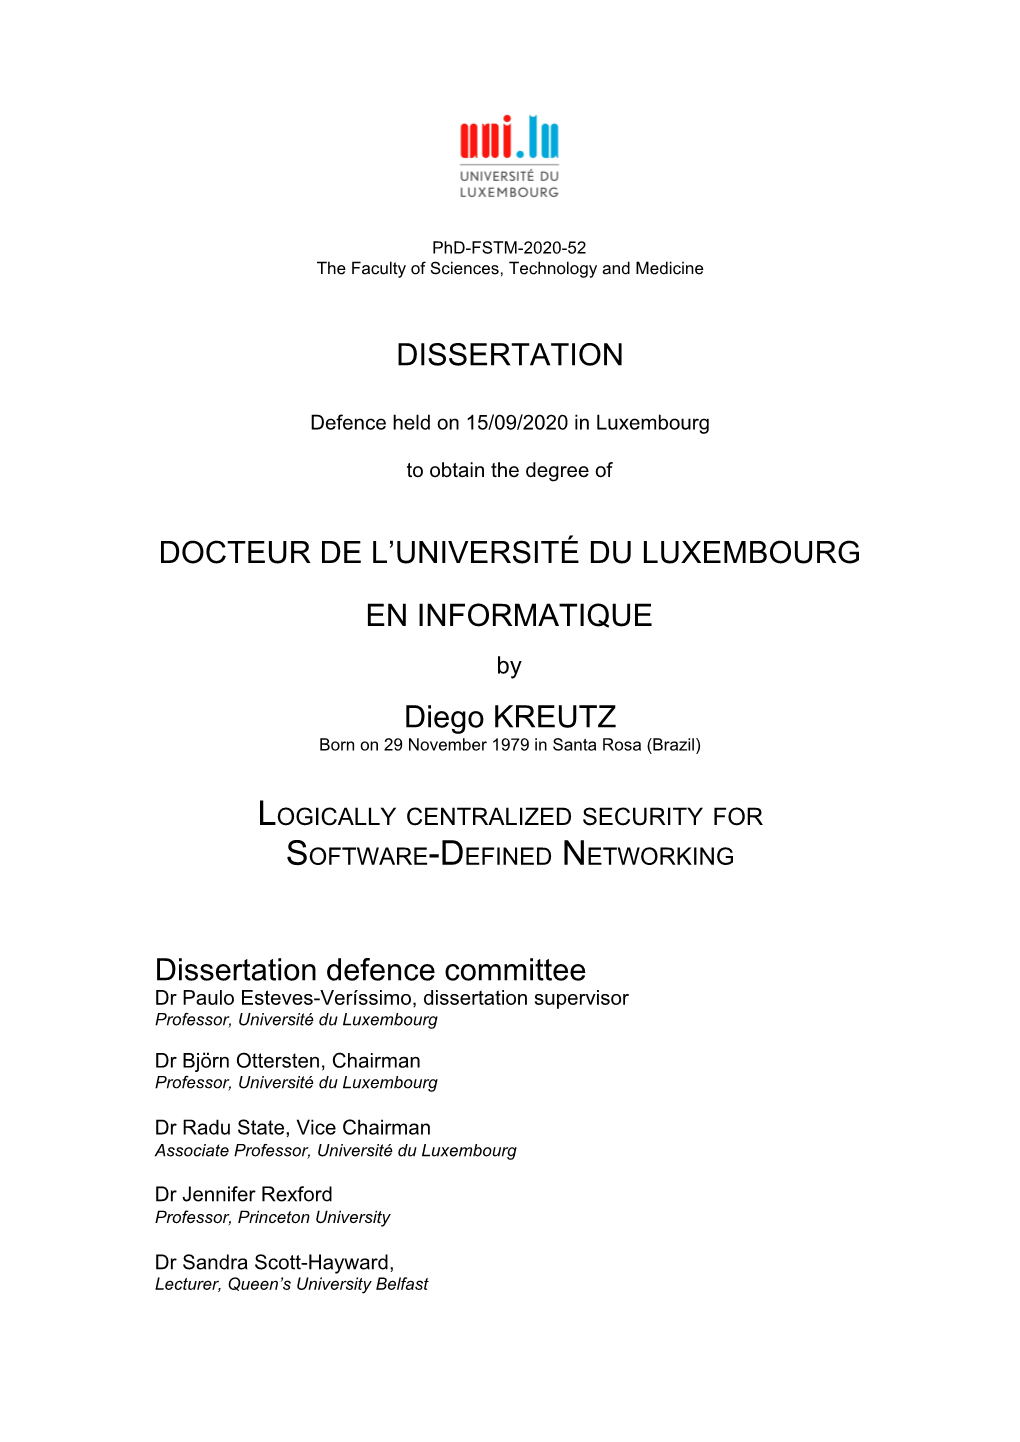 DISSERTATION DOCTEUR DE L UNIVERSITÉ DU LUXEMBOURG EN INFORMATIQUE Diego KREUTZ Dissertation Defence Committee